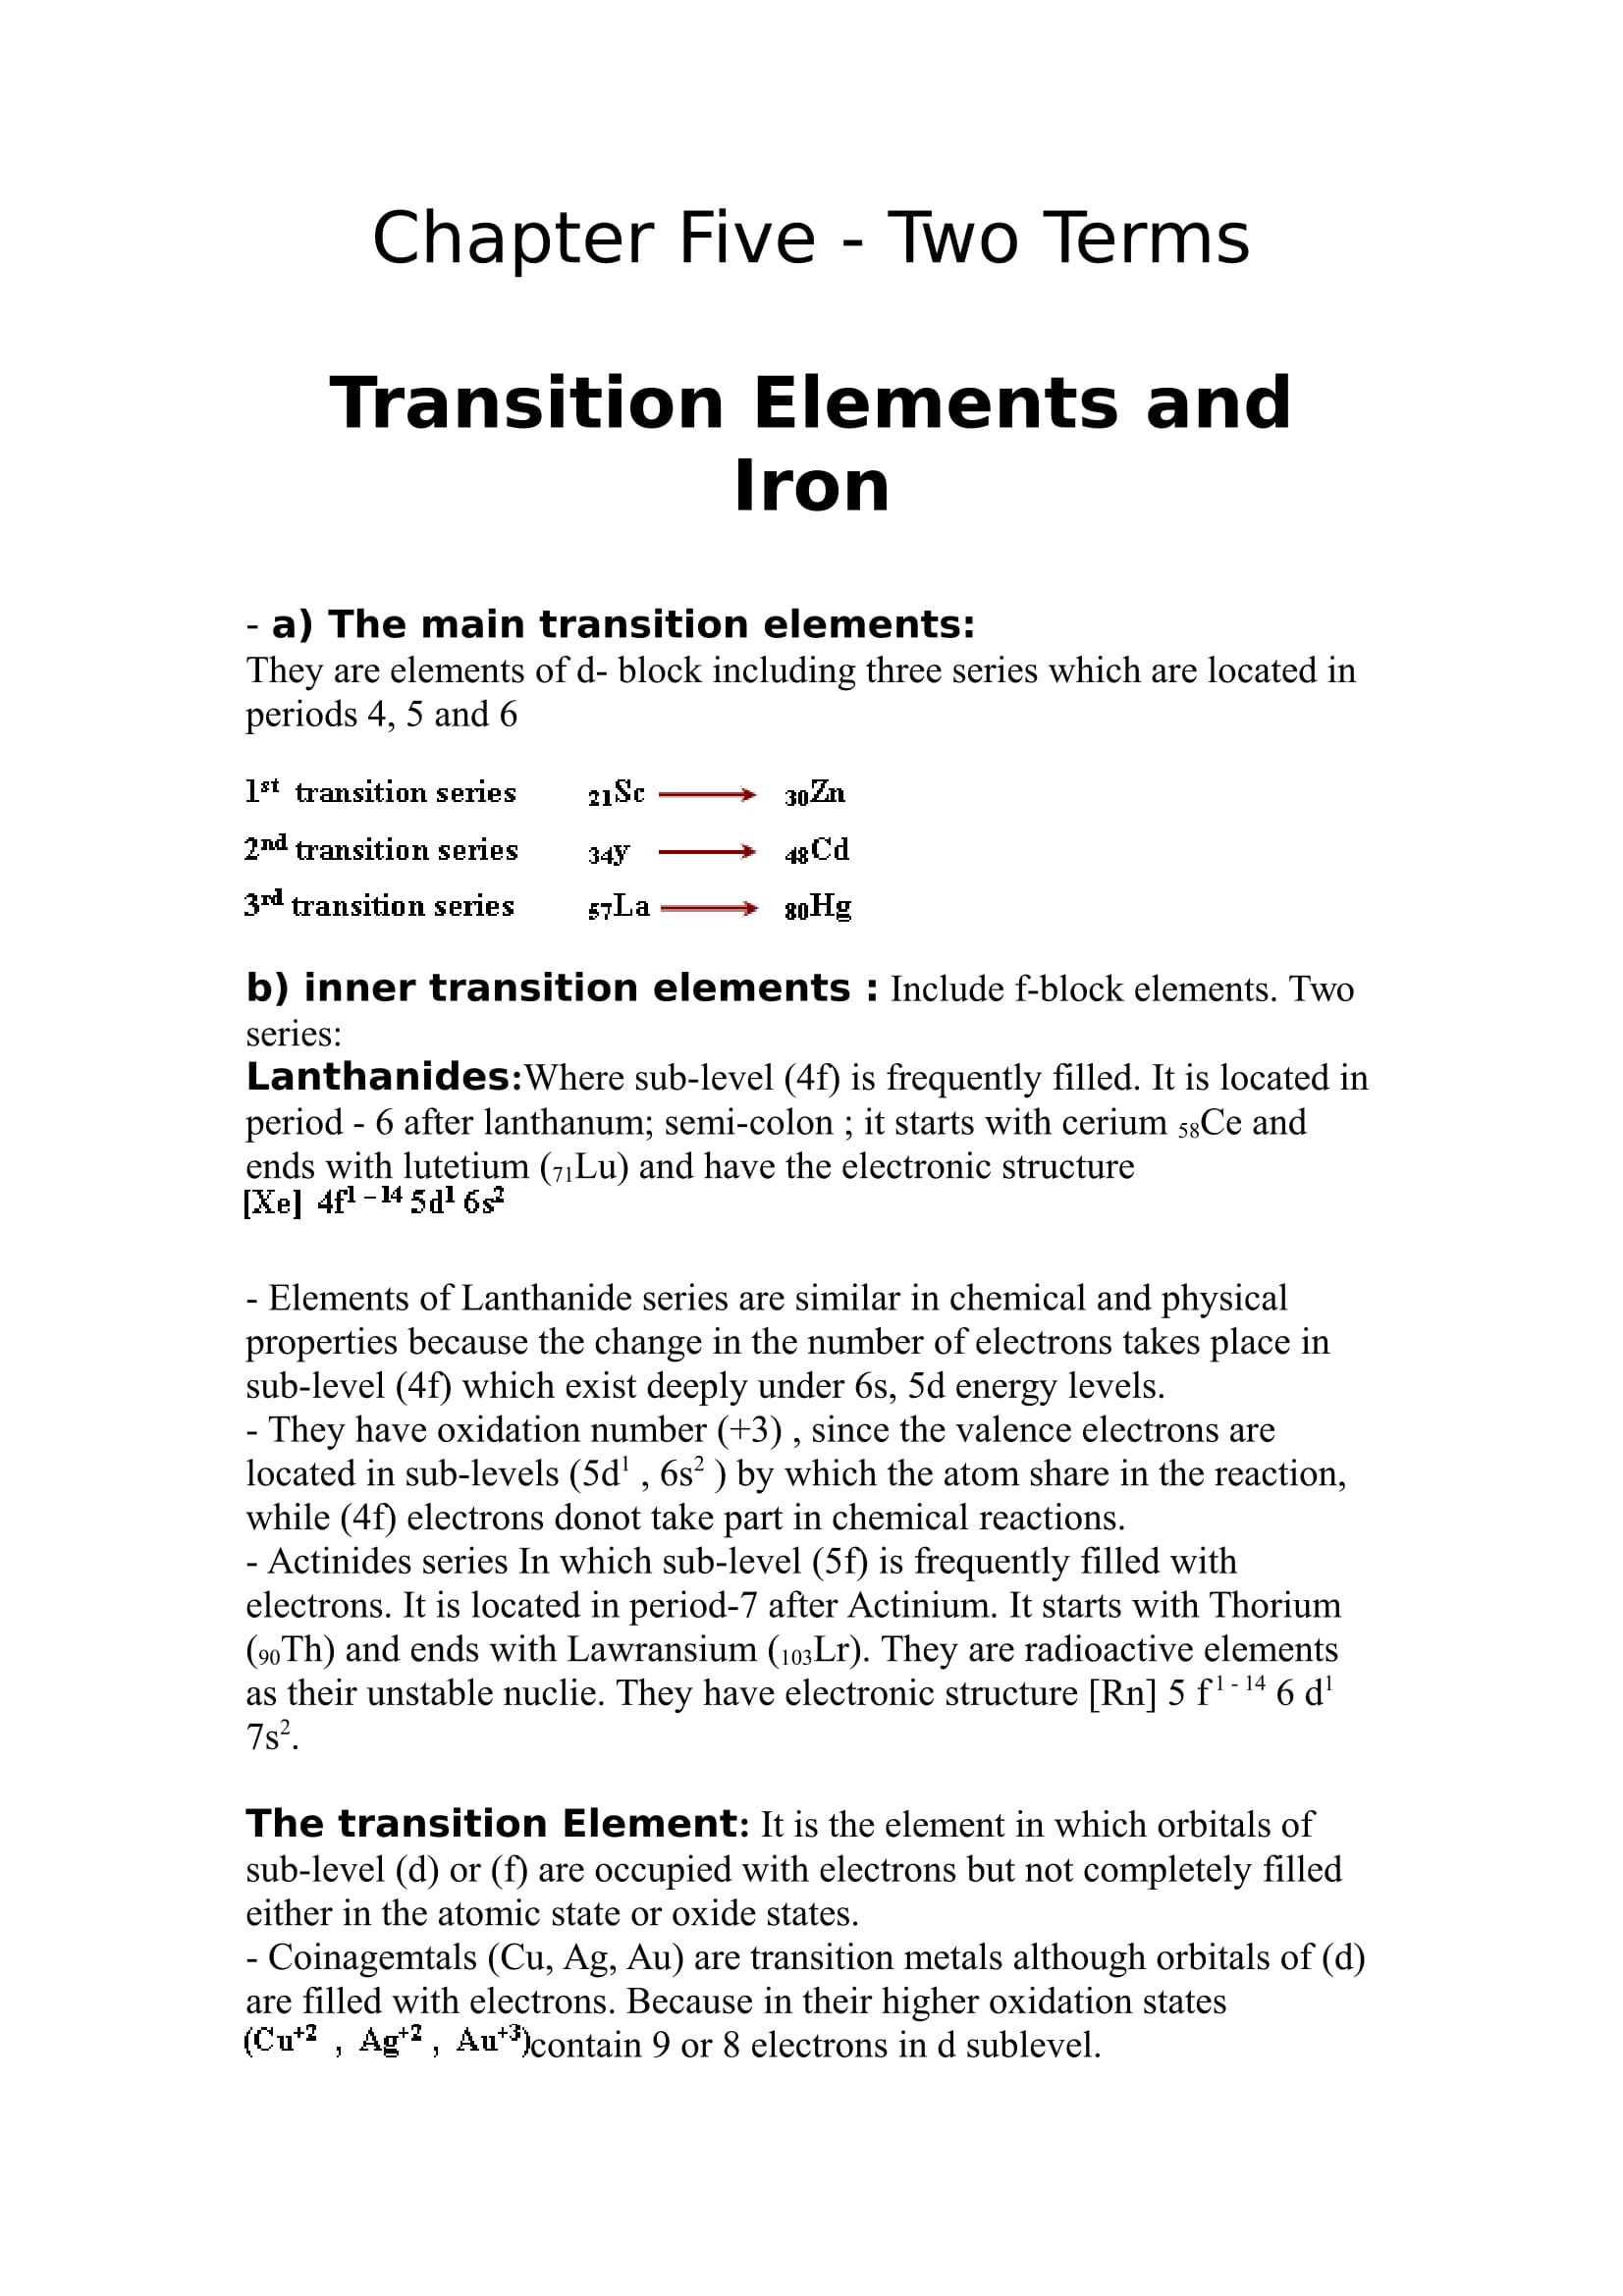 شرح وافى ل Chapter 5 فى Chemistry للصف الثالث الثانوى اللغات